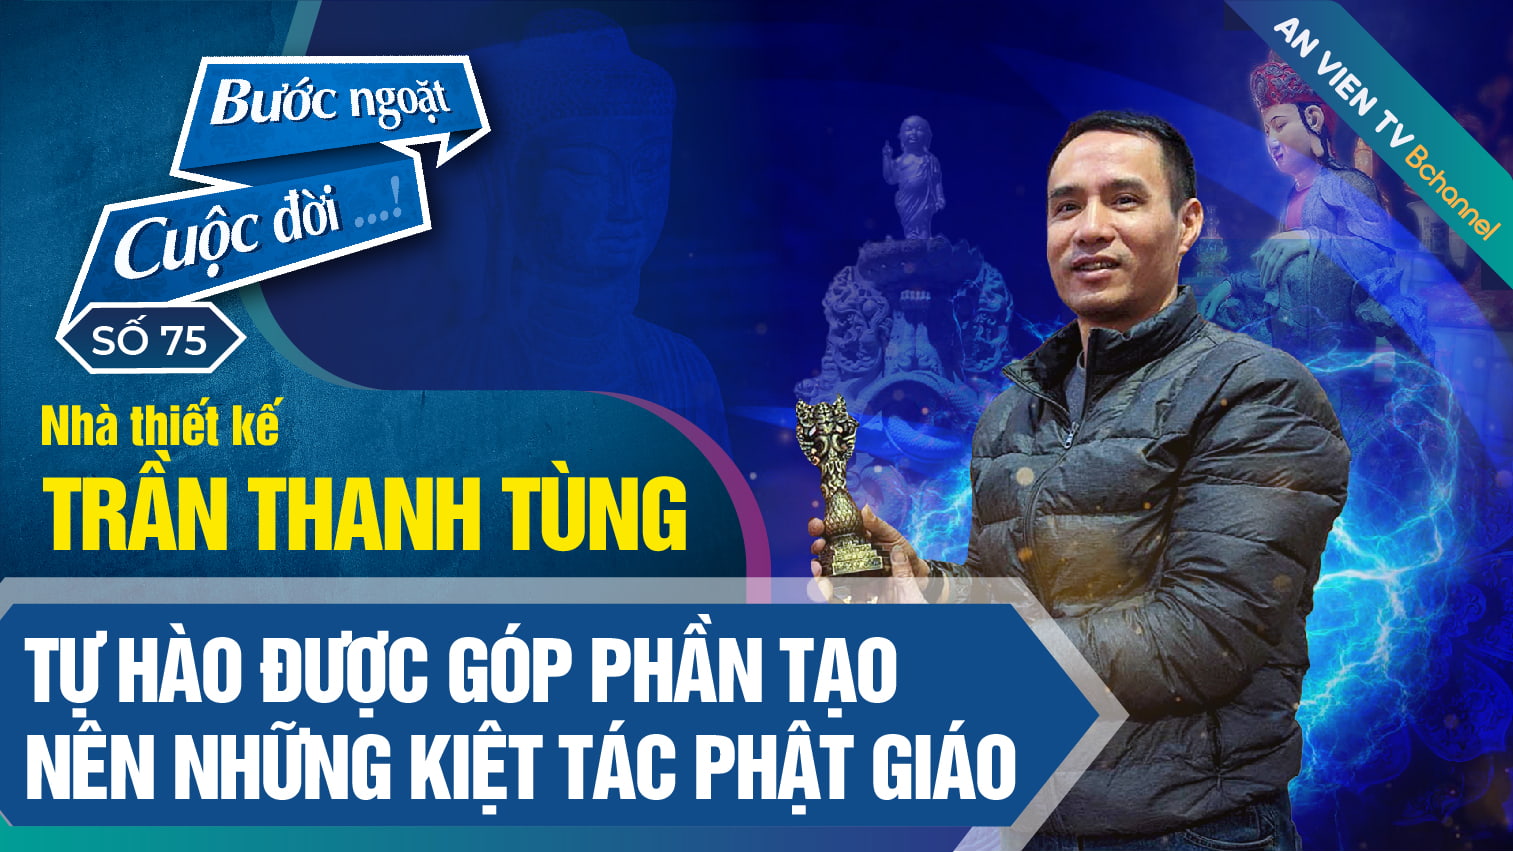 Nhà thiết kế Trần Thanh Tùng và sứ mệnh bảo tồn di sản Việt | Bước Ngoặt Cuộc Đời số 75